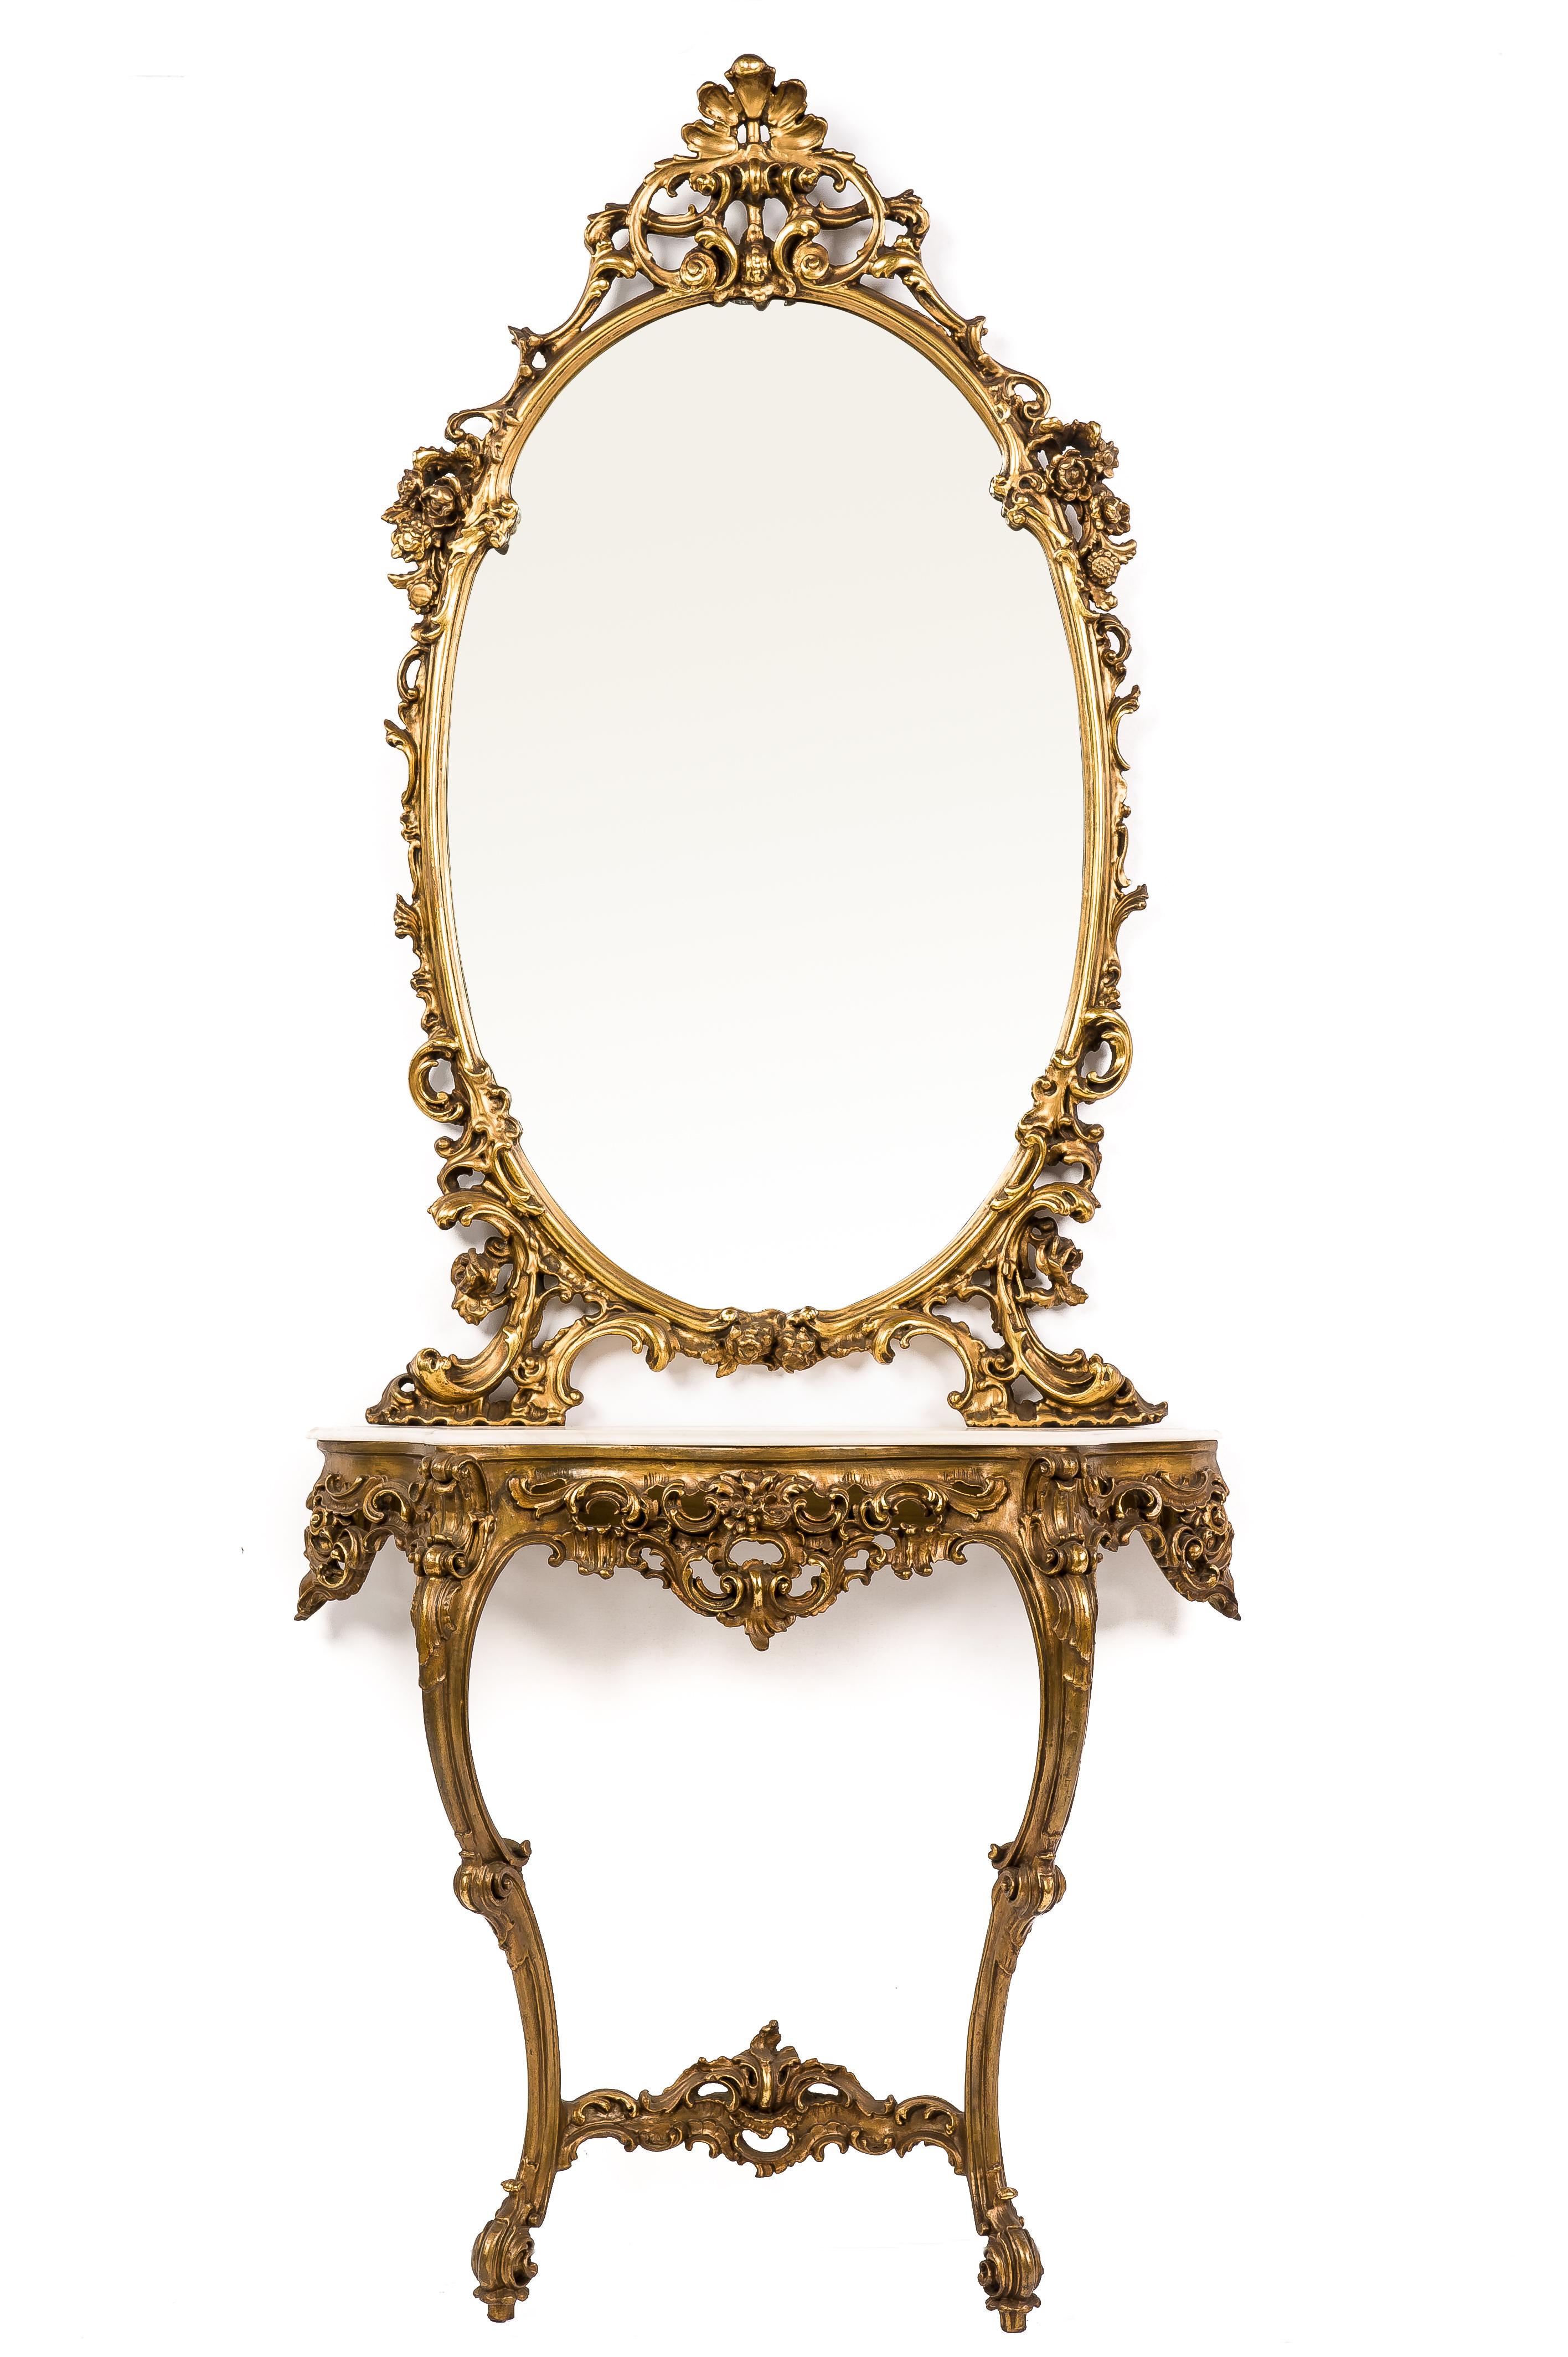 Dieser äußerst dekorative Konsolentisch mit ovalem Spiegel stammt aus dem Italien des frühen 20. Jahrhunderts. Der geschnitzte Holztisch und der Spiegelrahmen waren mit zarten Blumen, Akanthus-, Muschel- und Schneckenmotiven verziert. Das